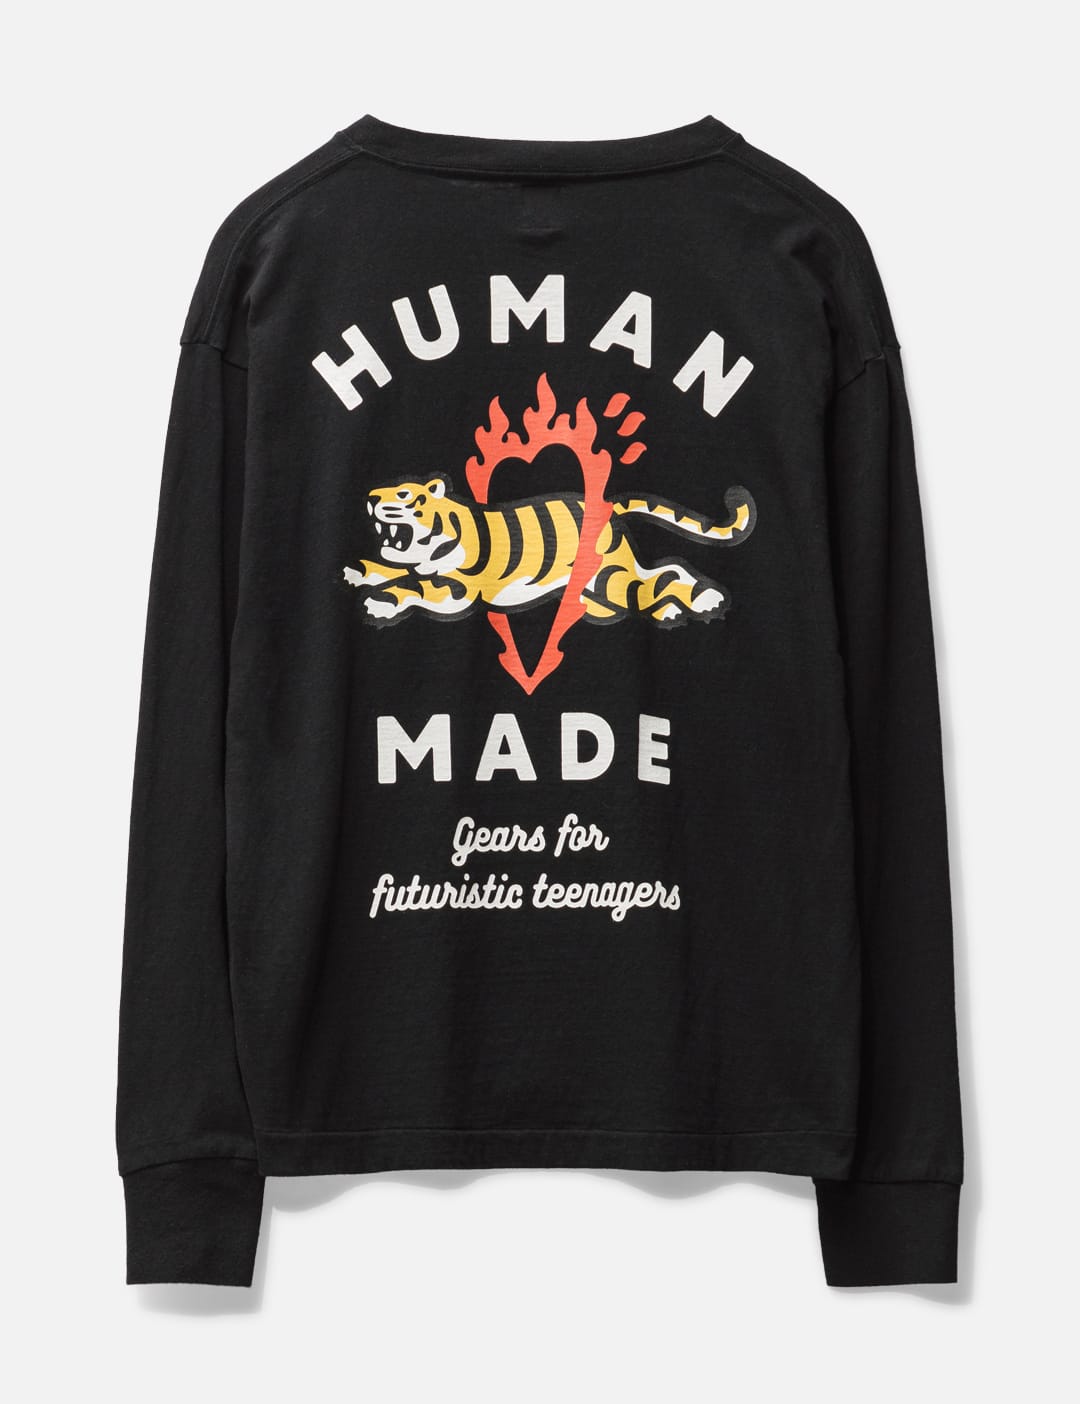 Human Made   グラフィック L/S Tシャツ #3   HBX   ハイプビースト